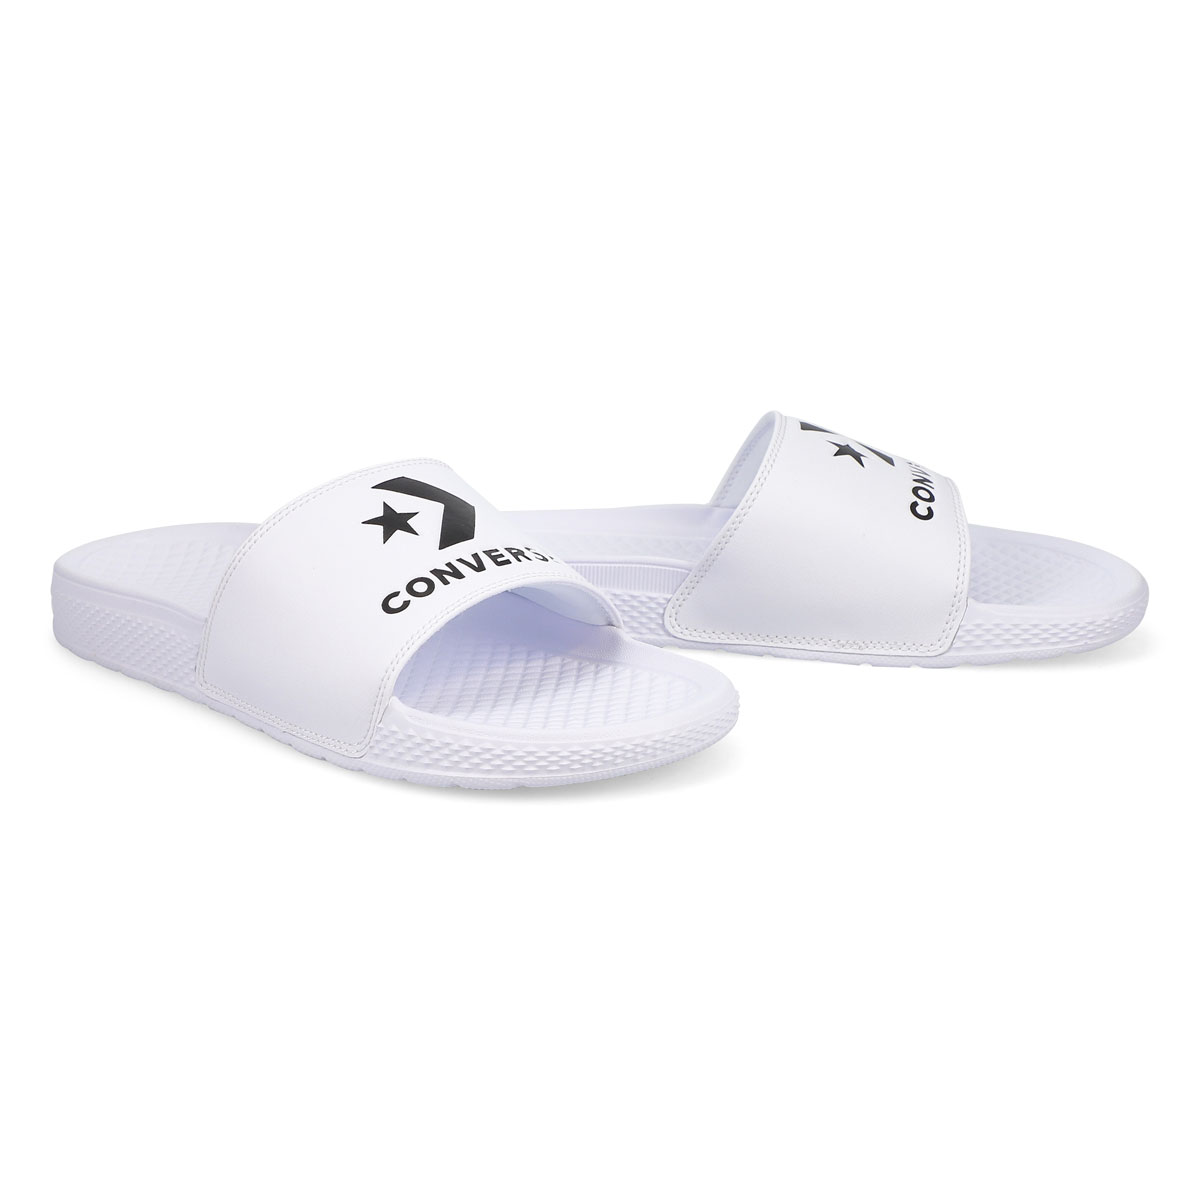 Women's All Star Slide Sandal - White/White